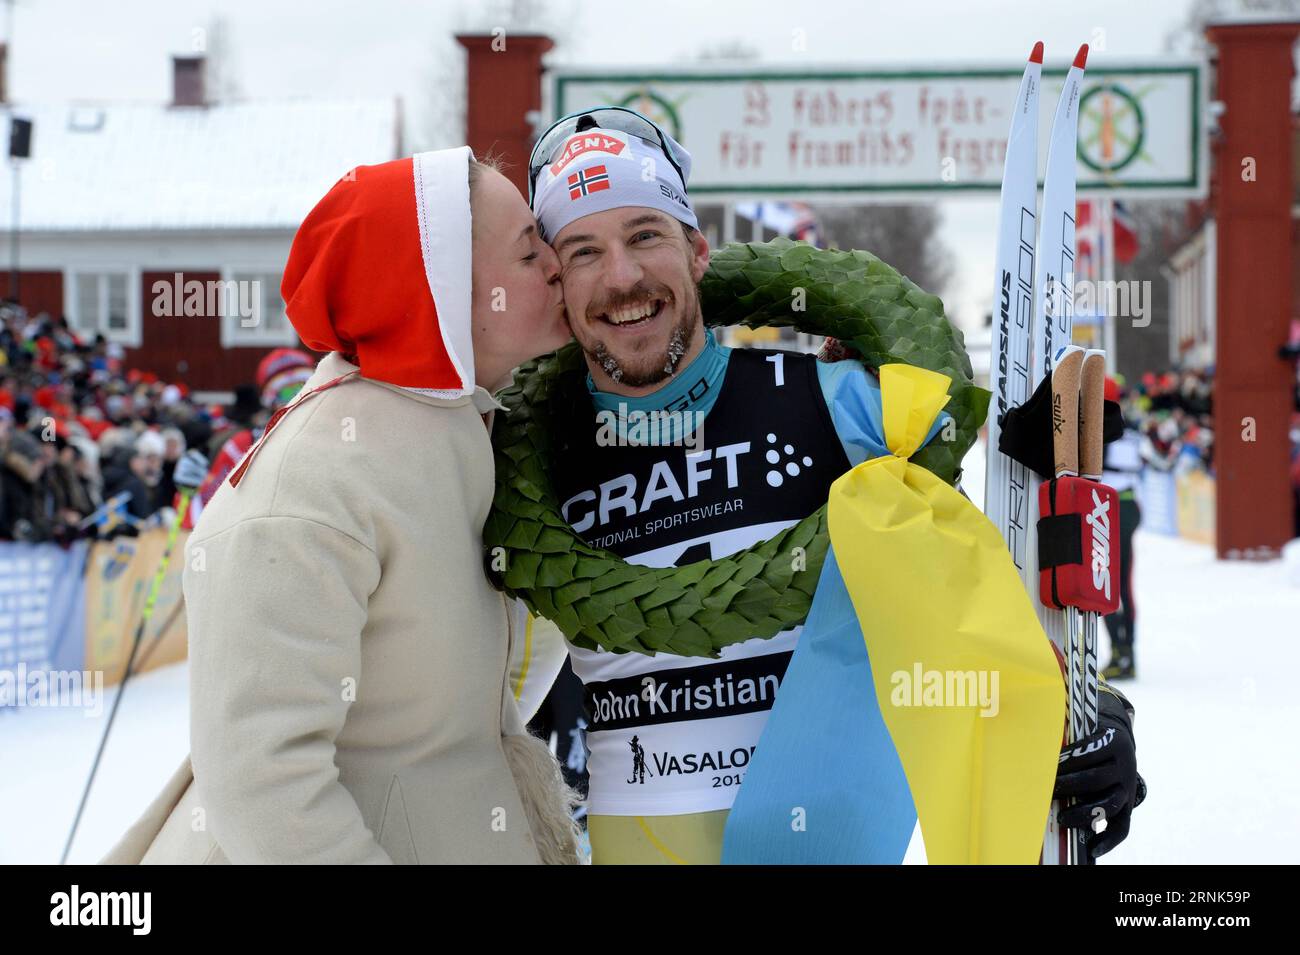 (170306) -- STOCCOLMA, 6 marzo 2017 () -- Norvegia S John Kristian Dahl (R) posa per le foto dopo aver vinto il campione maschile di sci di fondo Vasaloppet nella regione di Dalarna, nella Svezia centrale, 5 marzo 2017. (/Vasaloppet) (SP)SVEZIA-DALARNA-VASALOPPET 2017 Xinhua PUBLICATIONxNOTxINxCHN Stoccolma 6 marzo 2017 Norvegia John Kristian Dahl r posa per le foto dopo aver vinto il campione maschile di Vasaloppet Cross Country Ski Race nella regione Dalarna della Svezia centrale 5 marzo 2017 Vasaloppet SP Svezia Dalarna Vasaloppet 2017 XINHUA PUBLINTIXINTIXINTIXINTIONTIXNCHN Foto Stock